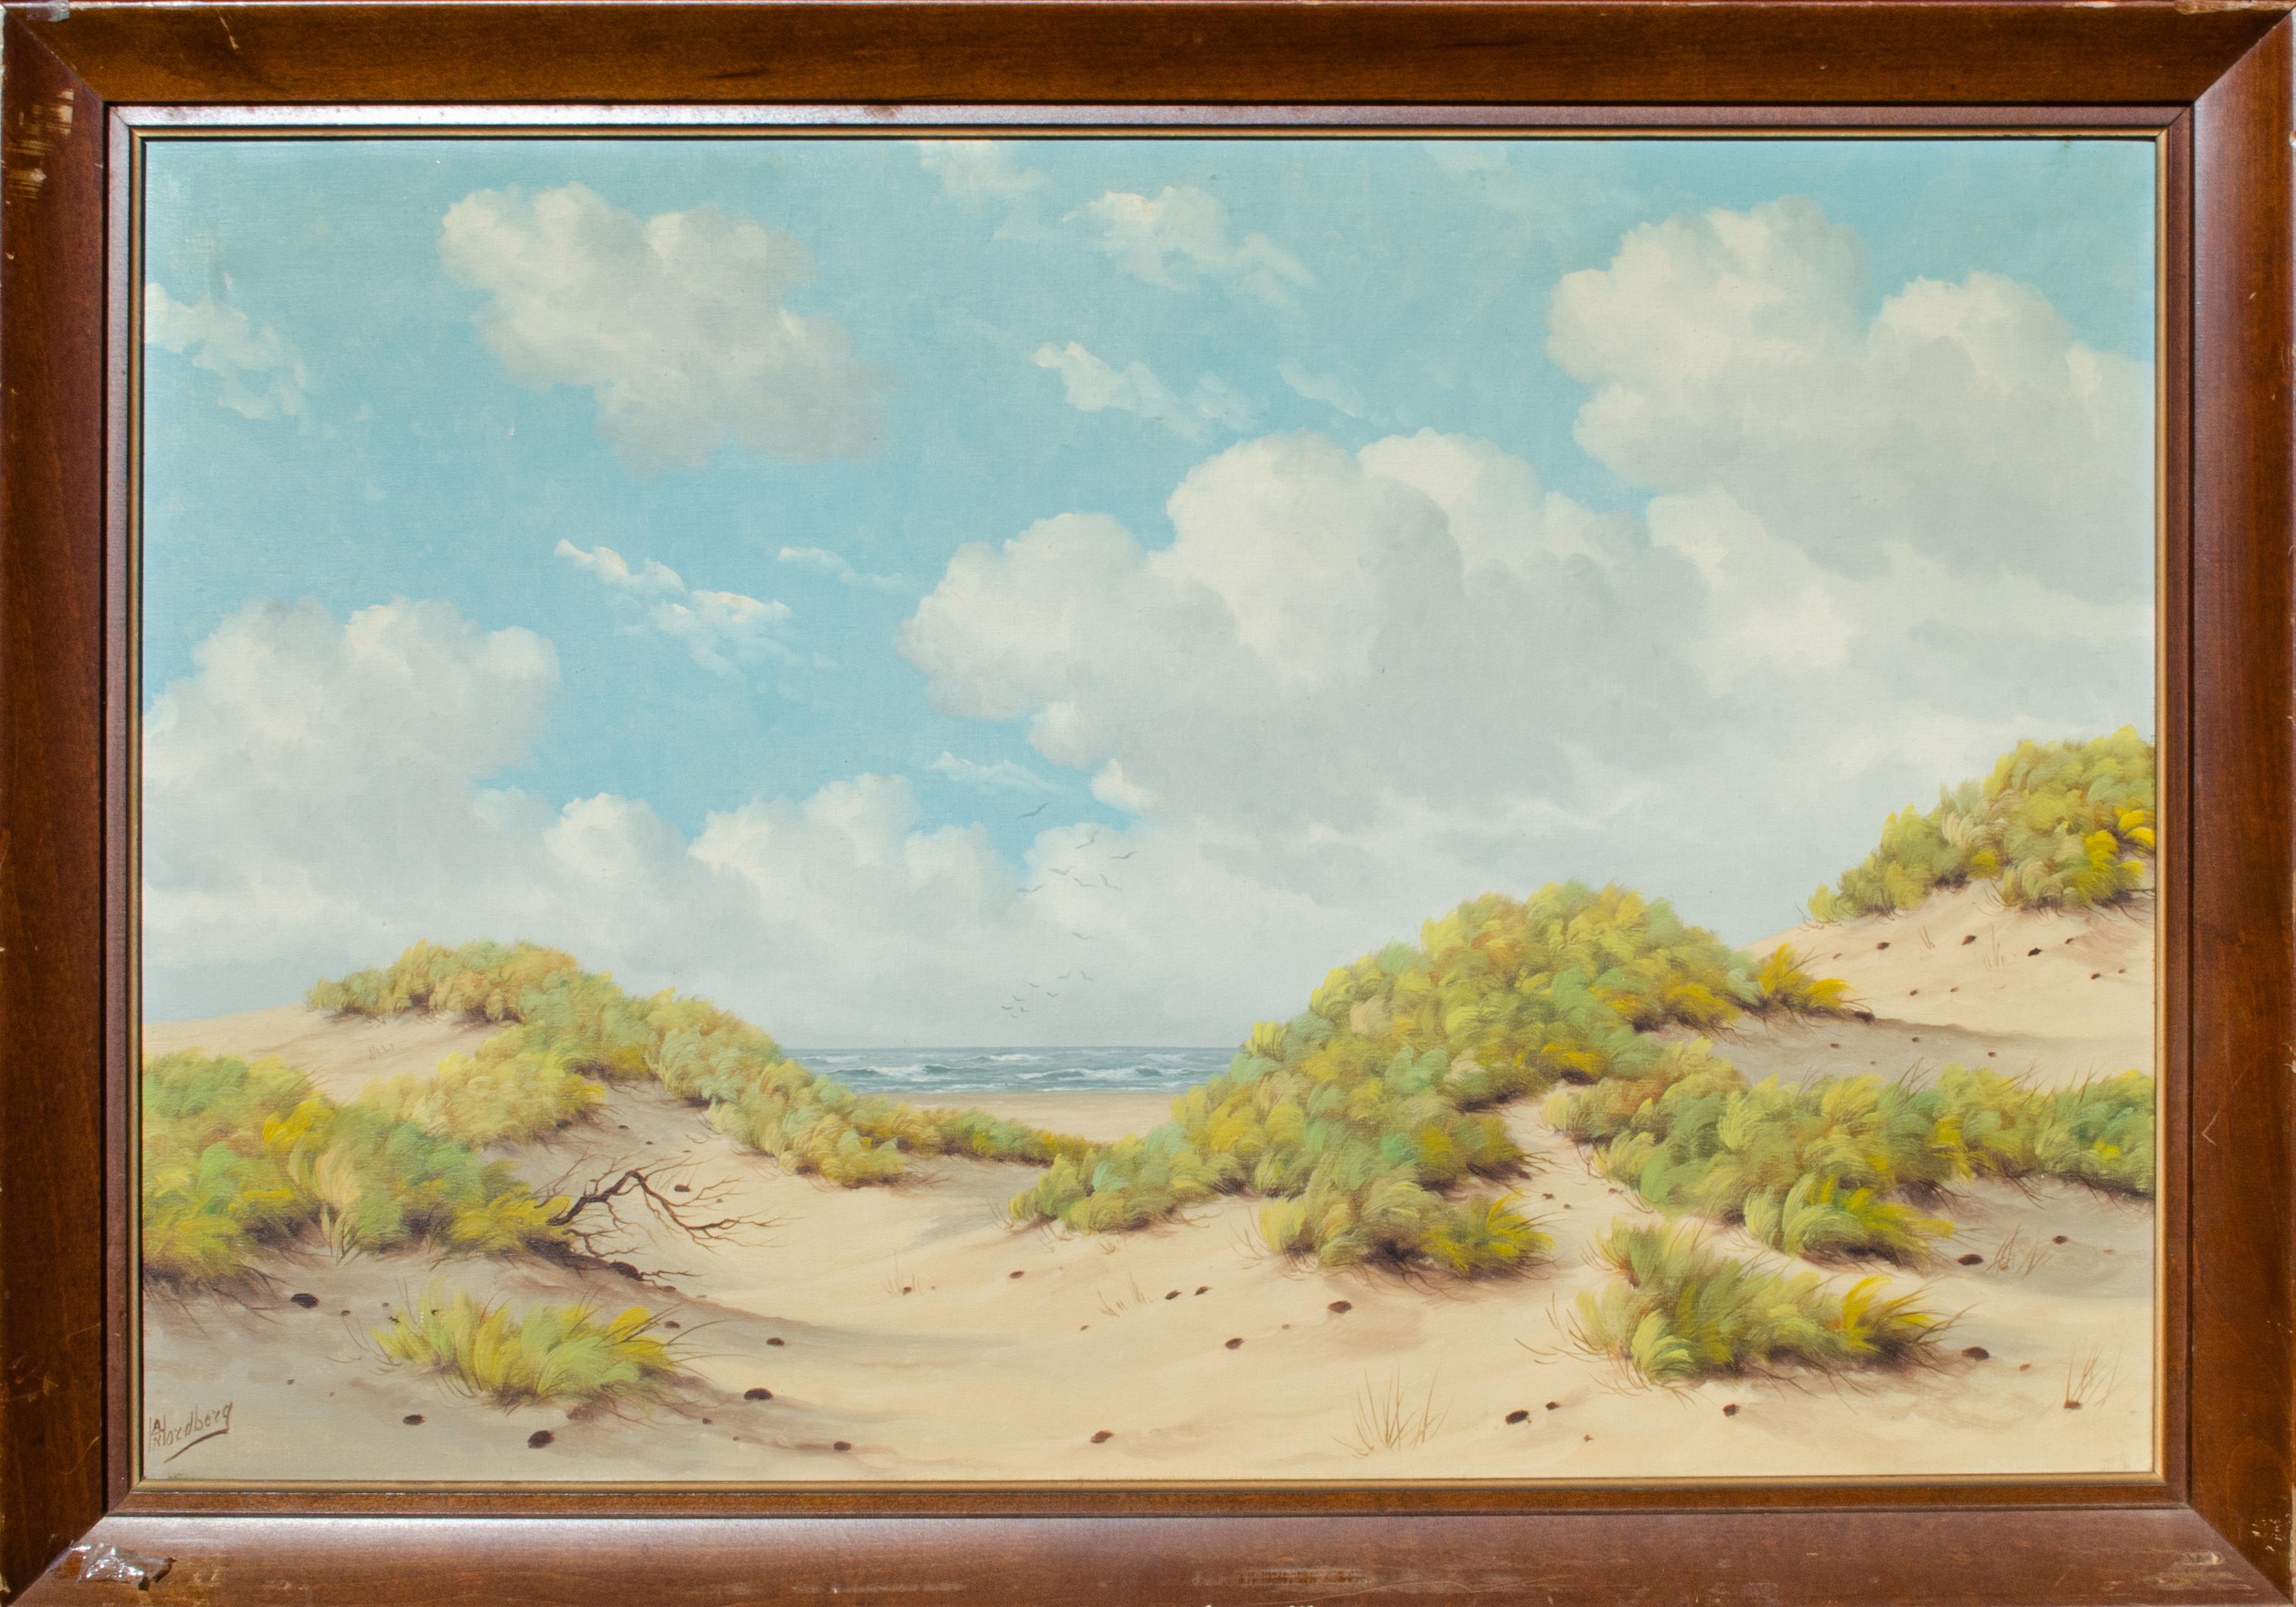 A.H. Nordberg (Suédois-Américain)
Sans titre, 20e siècle
Huile sur toile
24 x 36 in.
Encadré : 28 x 39 3/4 x 1 3/4 in.
Signé en bas à gauche

A.H. Nordberg est un peintre suédois connu, actif au 20e siècle. Il était connu pour ses paysages de dunes